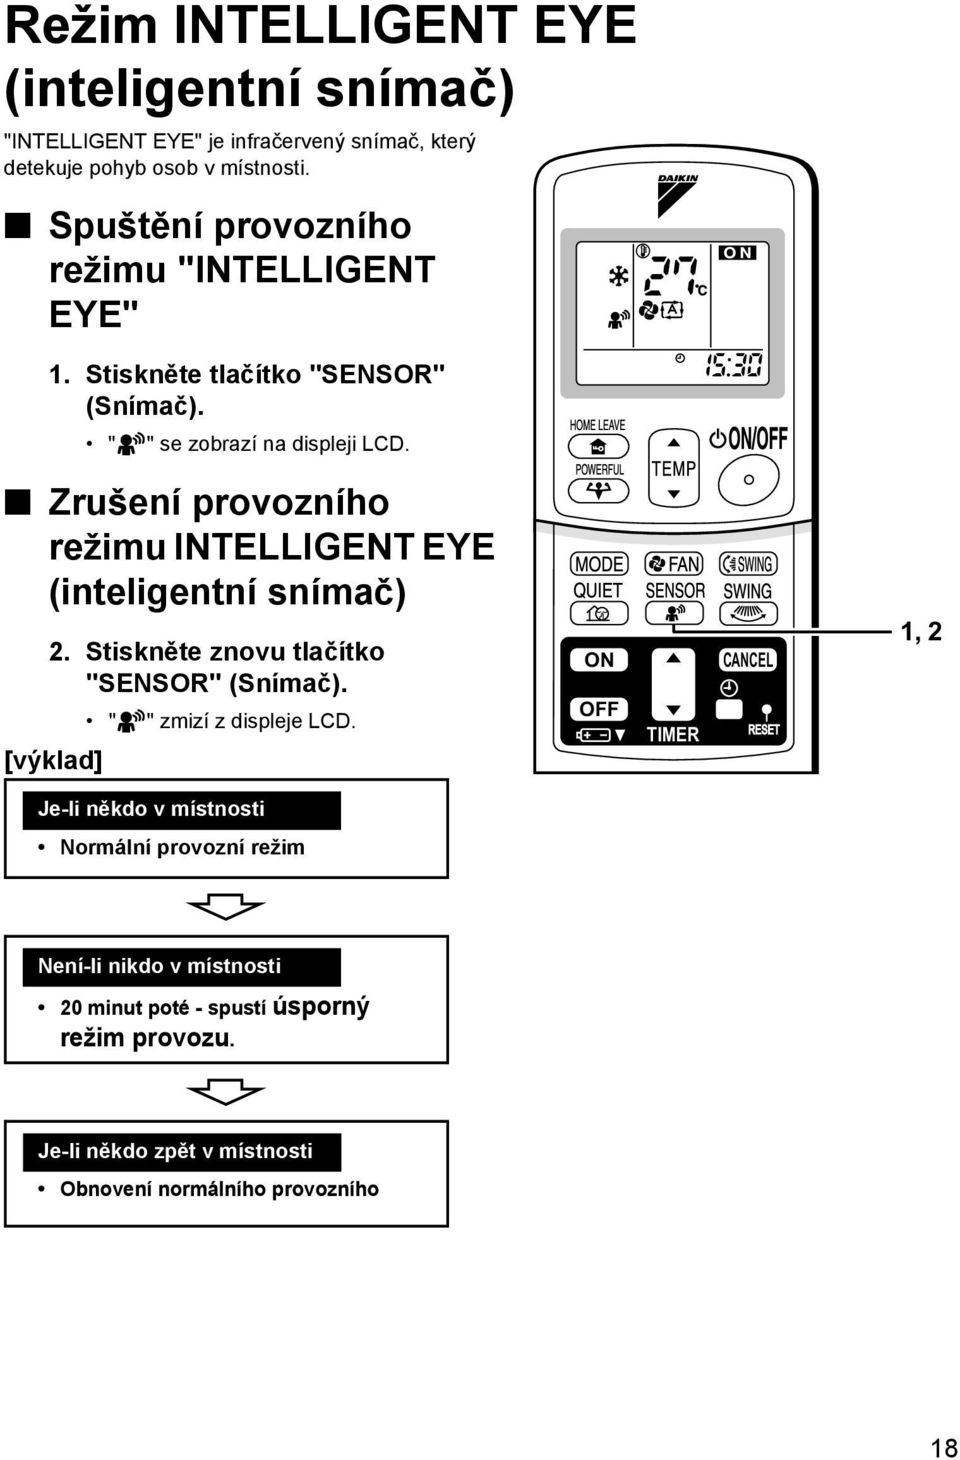 Zrušení provozního režimu INTELLIGENT EYE (inteligentní snímač) 2. Stiskněte znovu tlačítko "SENSOR" (Snímač). " [výklad] " zmizí z displeje LCD.